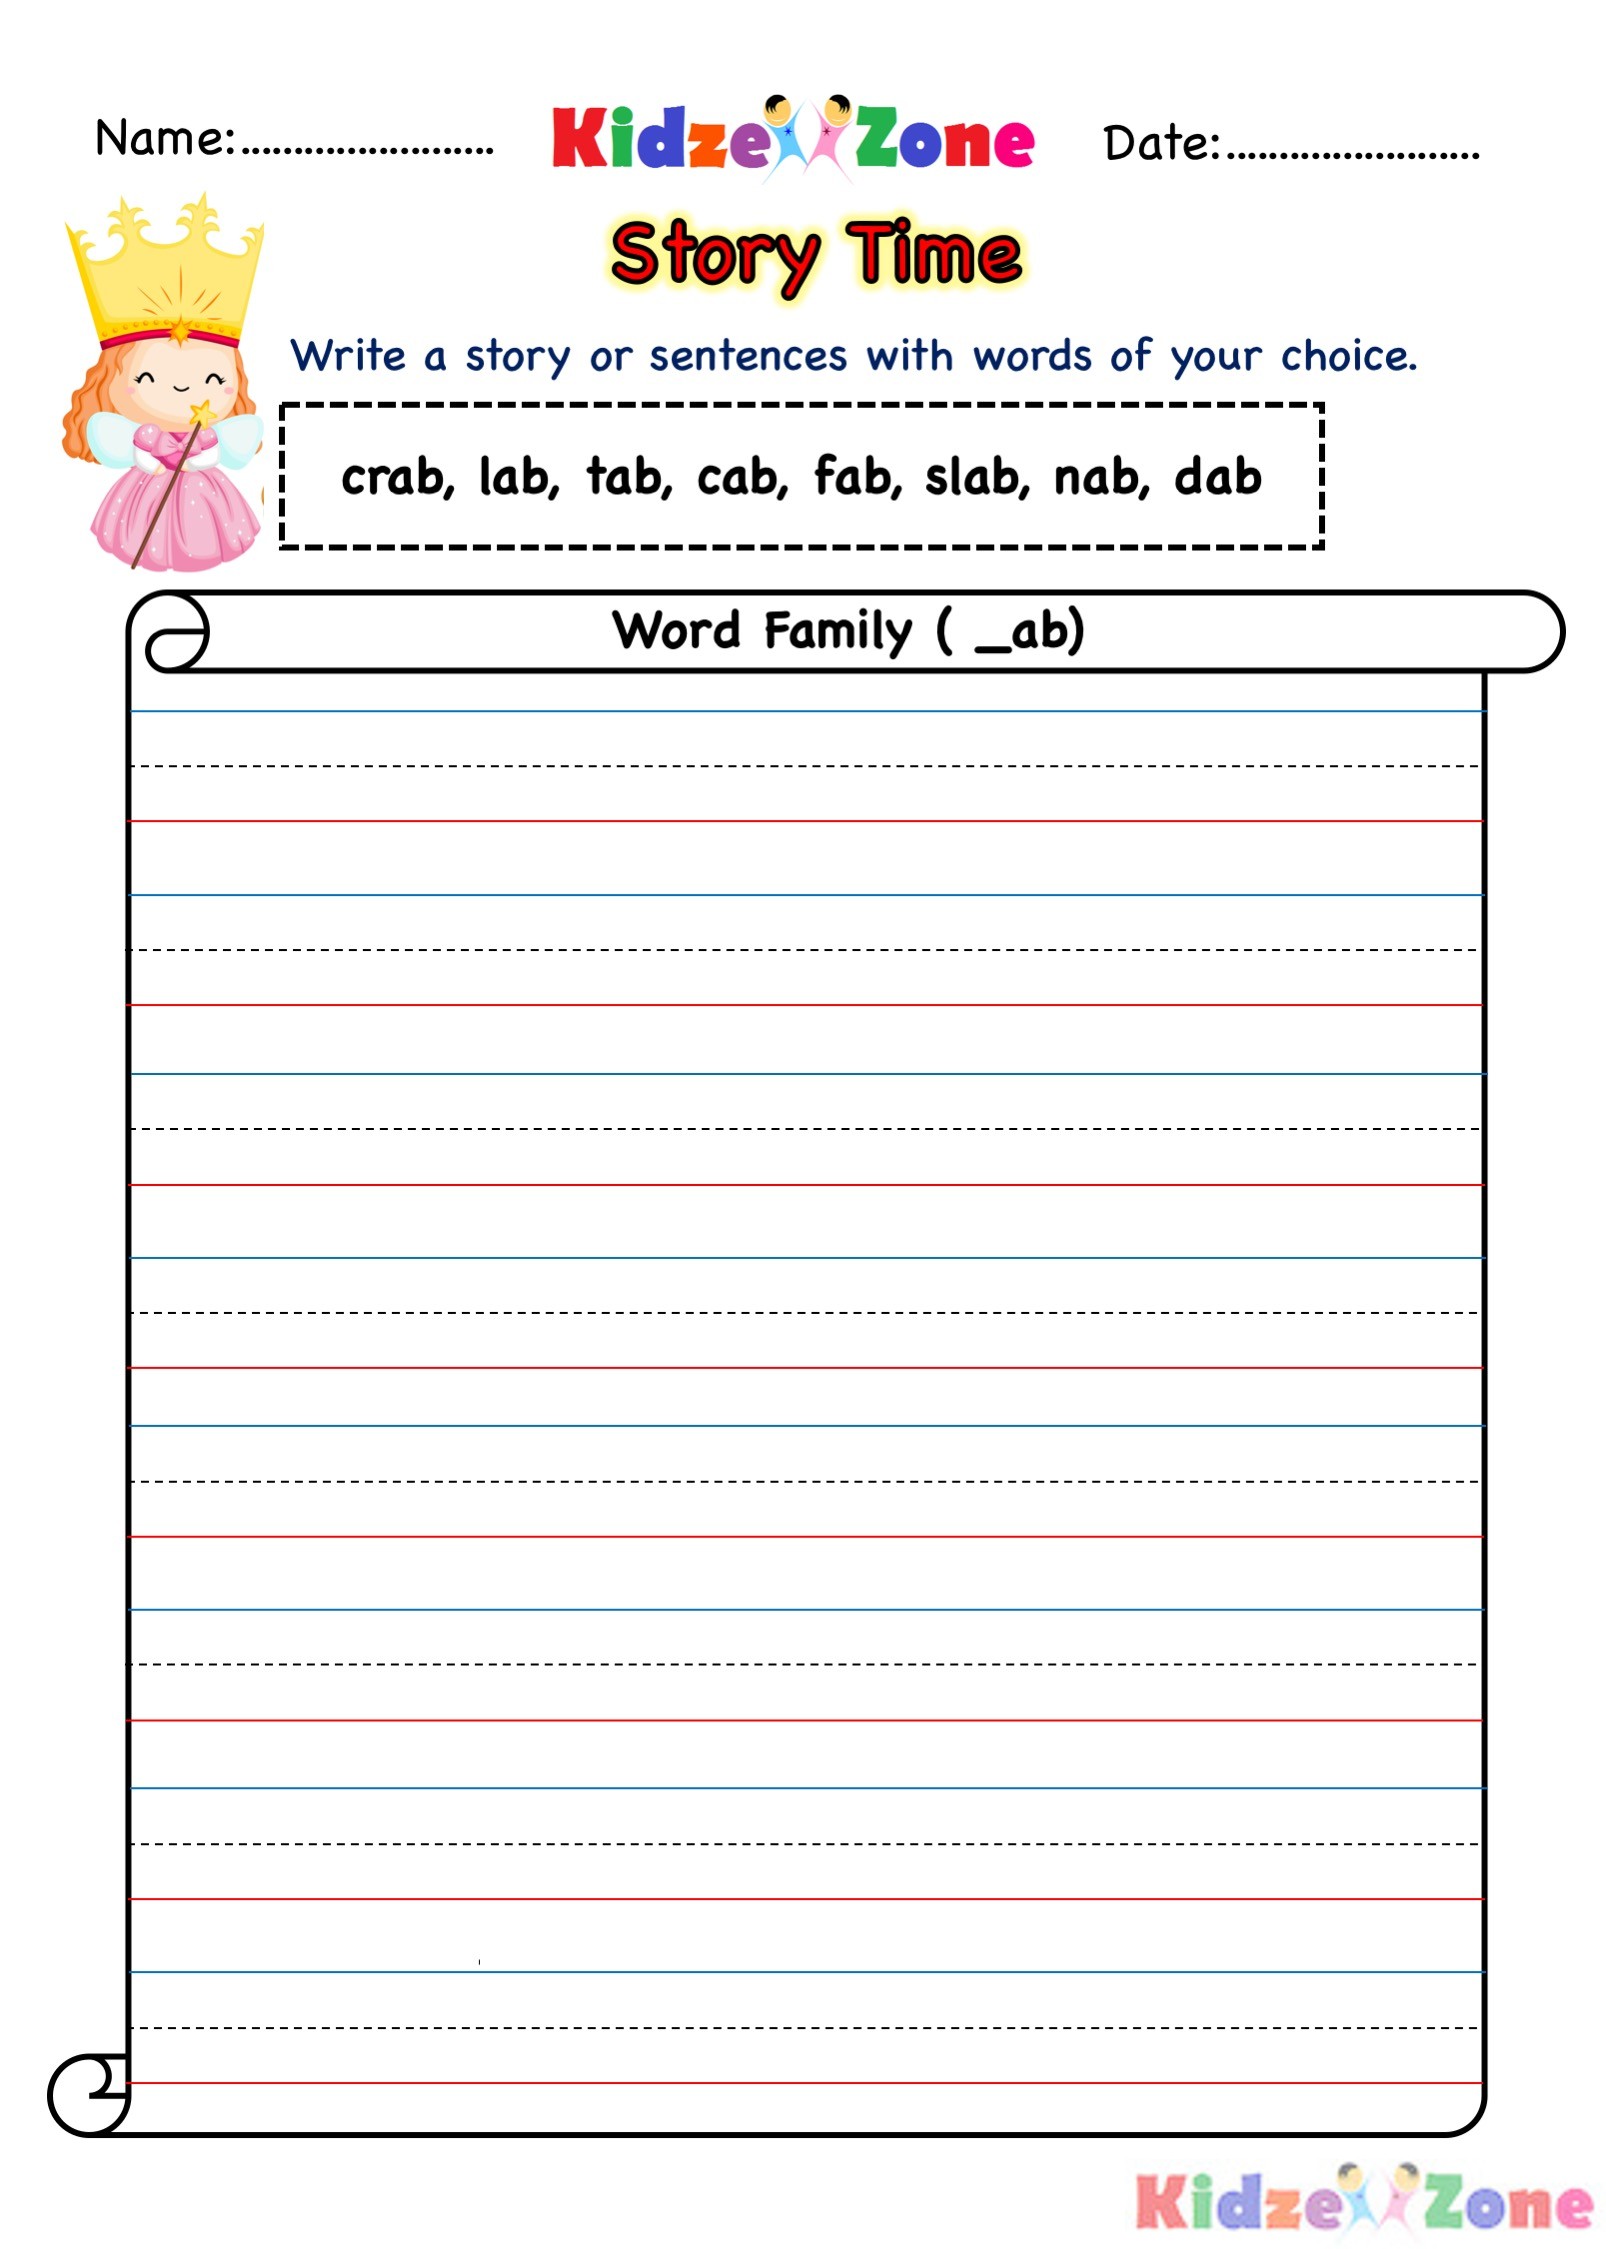 ab word family story writing worksheet kidzezone